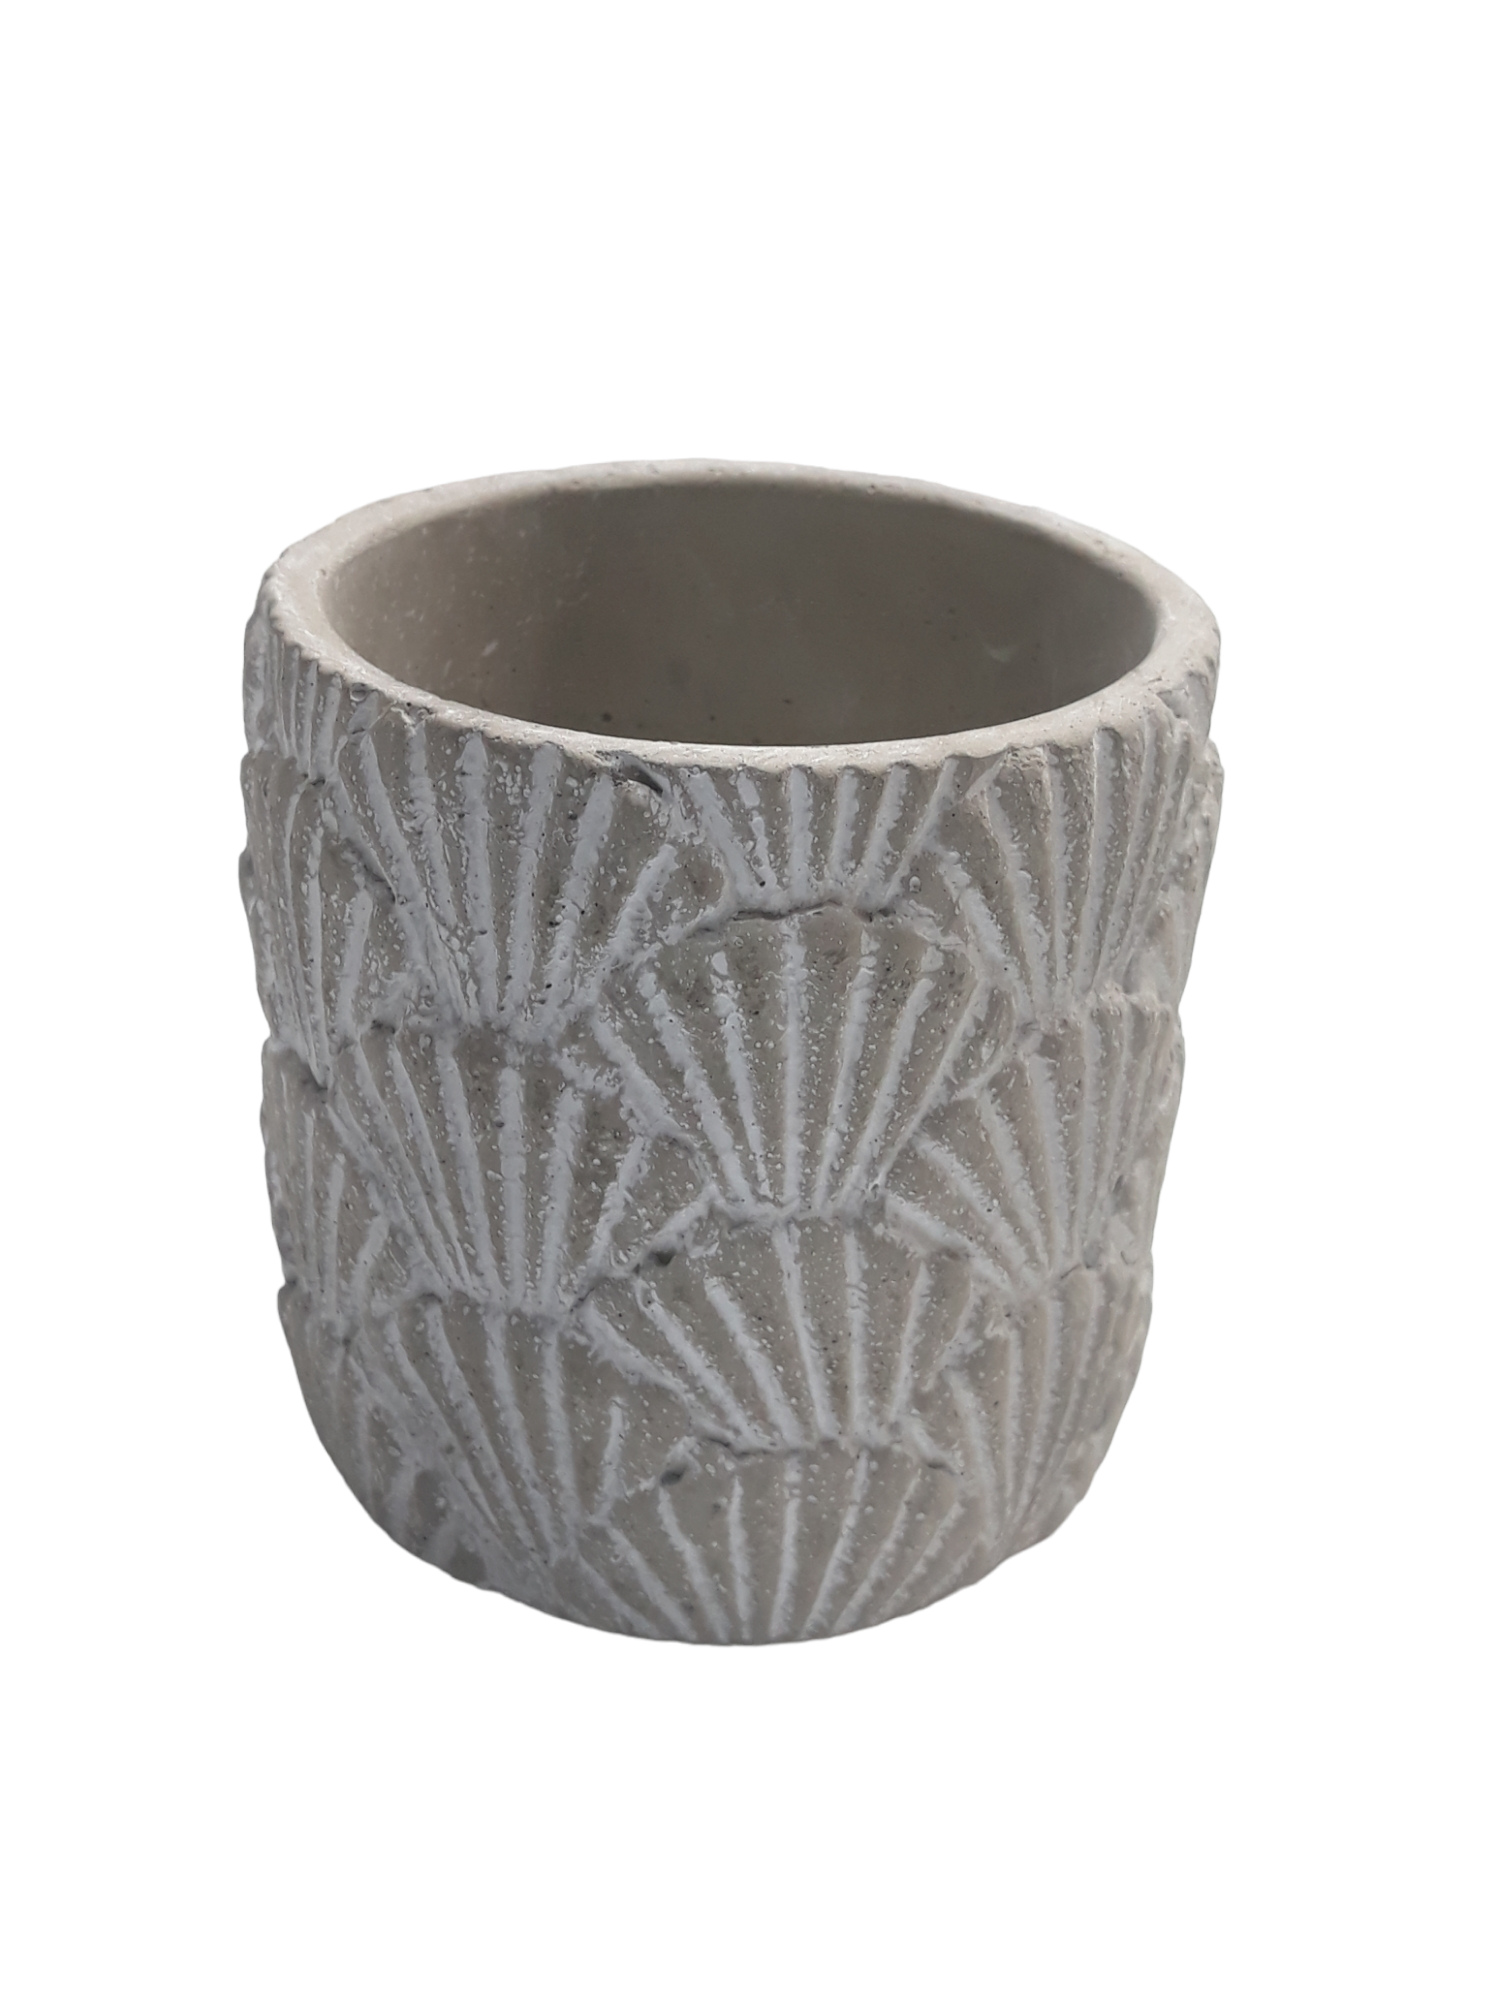 Michael Carr Designs® 3.5" Shell Pot - Light Gray